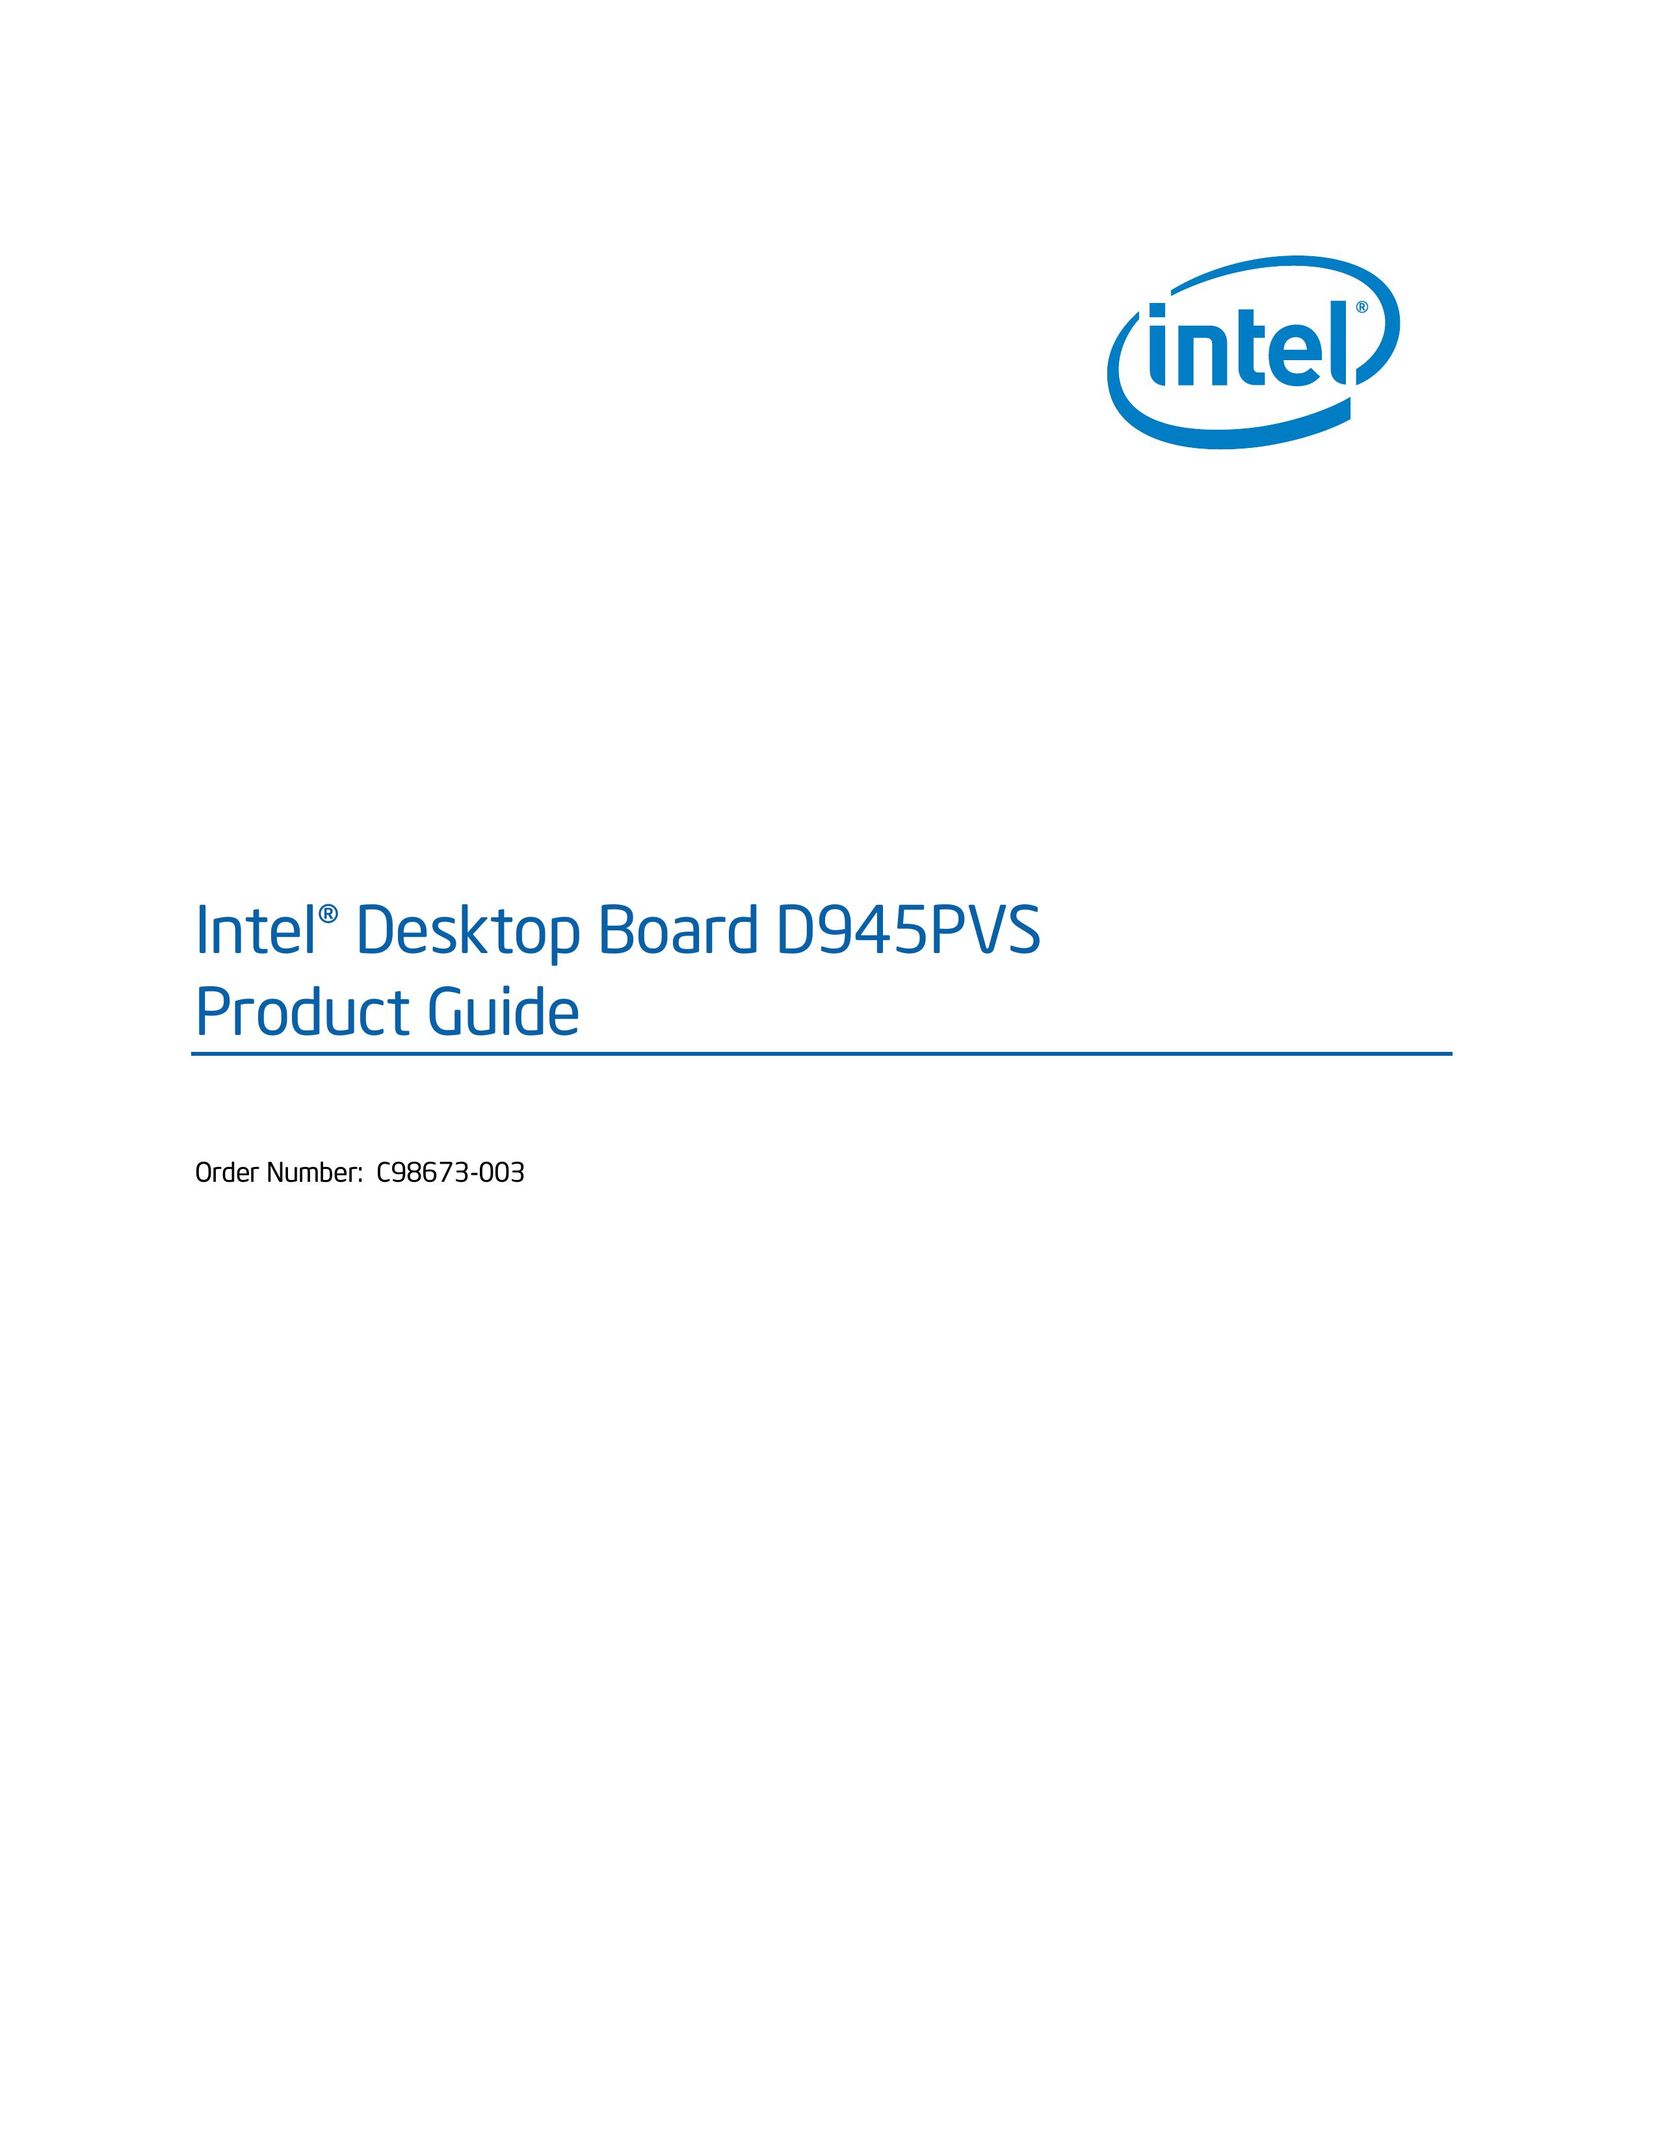 Intel D945PVS Telephone User Manual